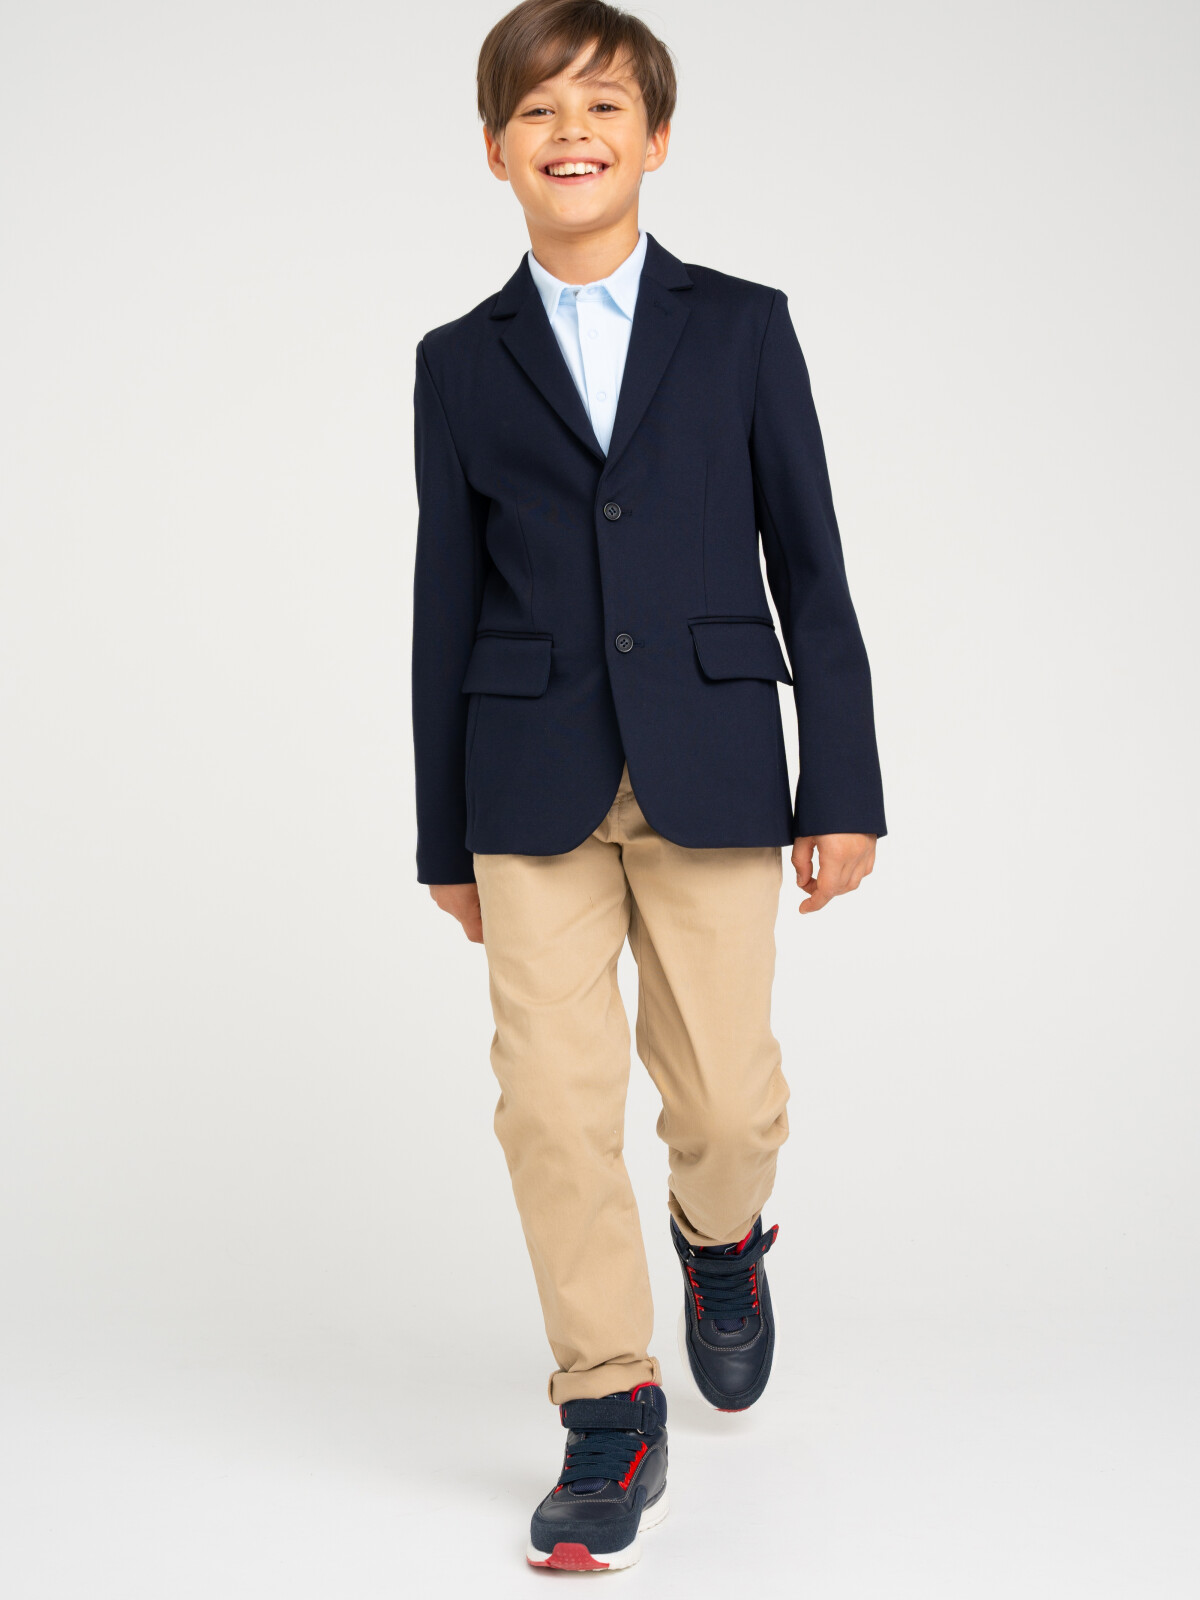 Пиджак трикотажный для мальчика PlayToday, тёмно-синий, 170